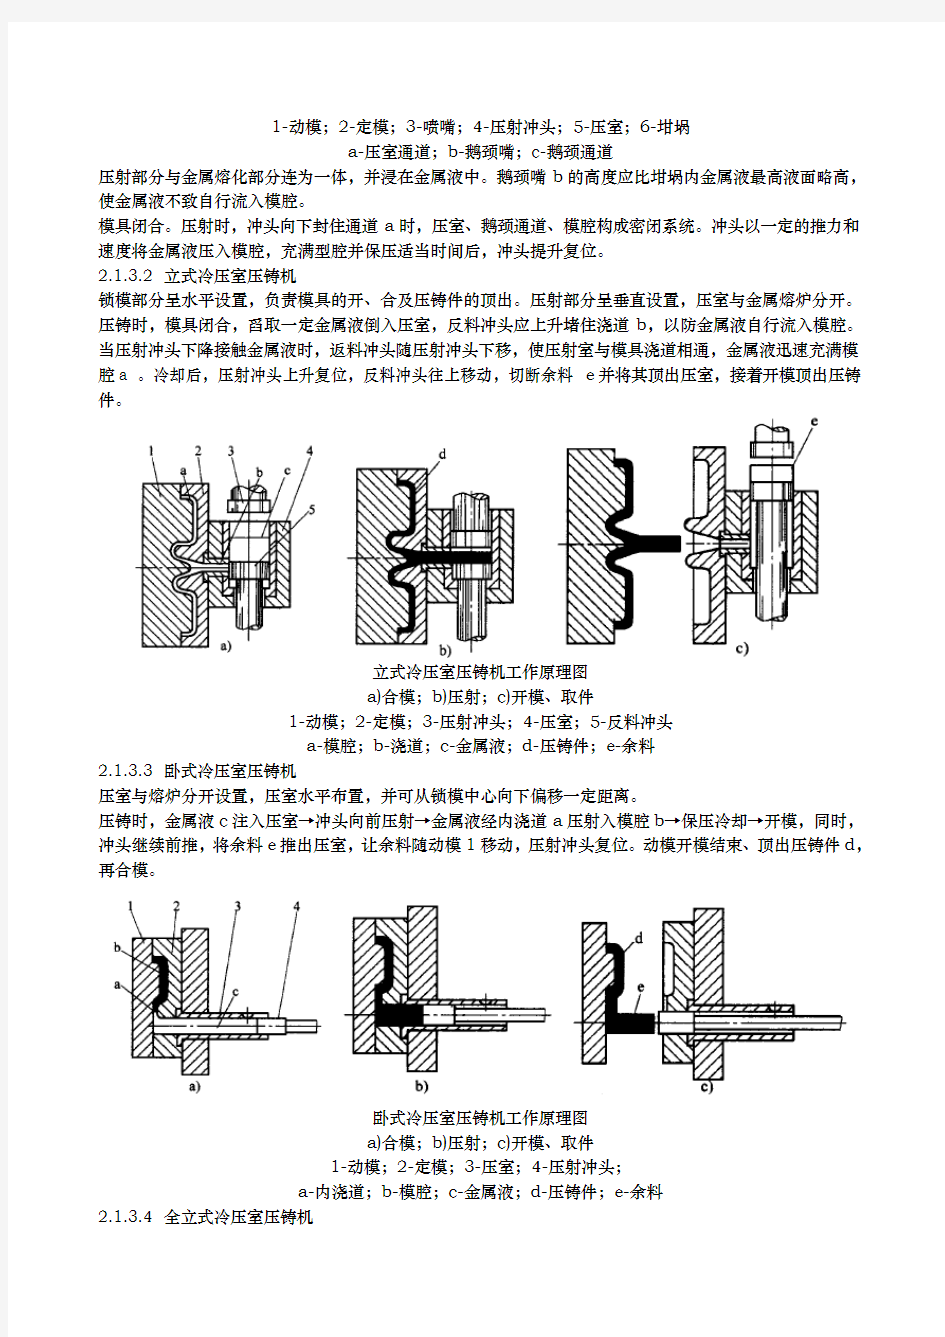 压铸机的工作原理与本体结构